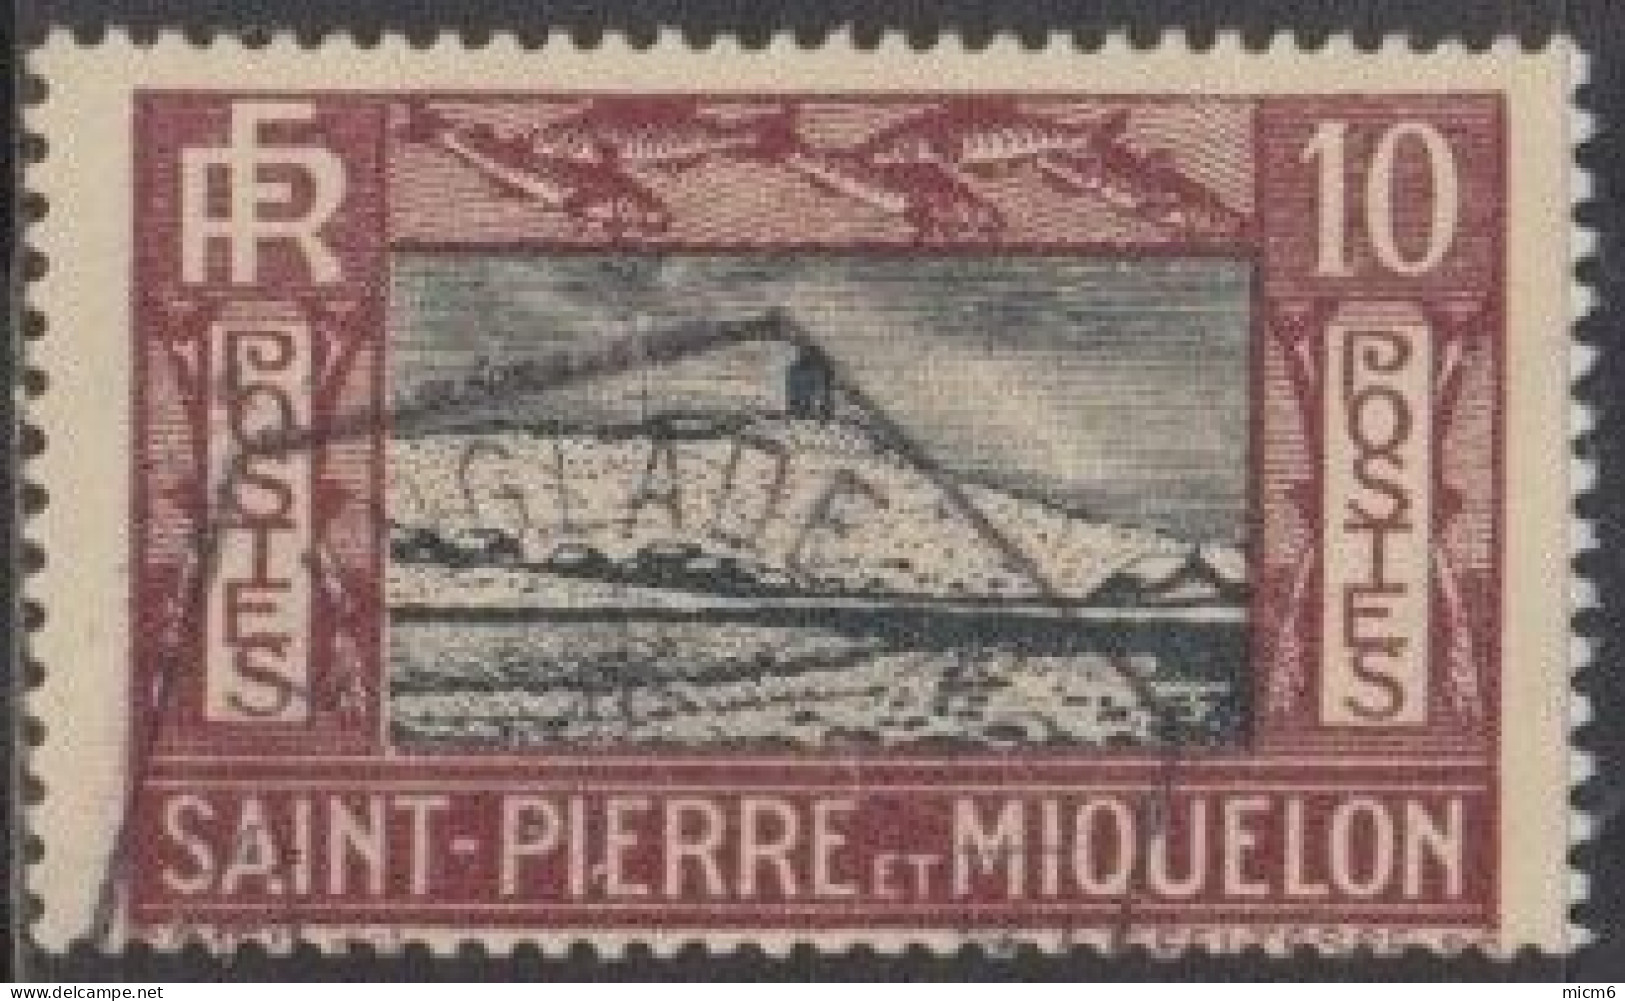 Saint-Pierre Et Miquelon 1910-1939 - N° 140 (YT) N° 143 (AM) Oblitéré De Langlade. - Usados